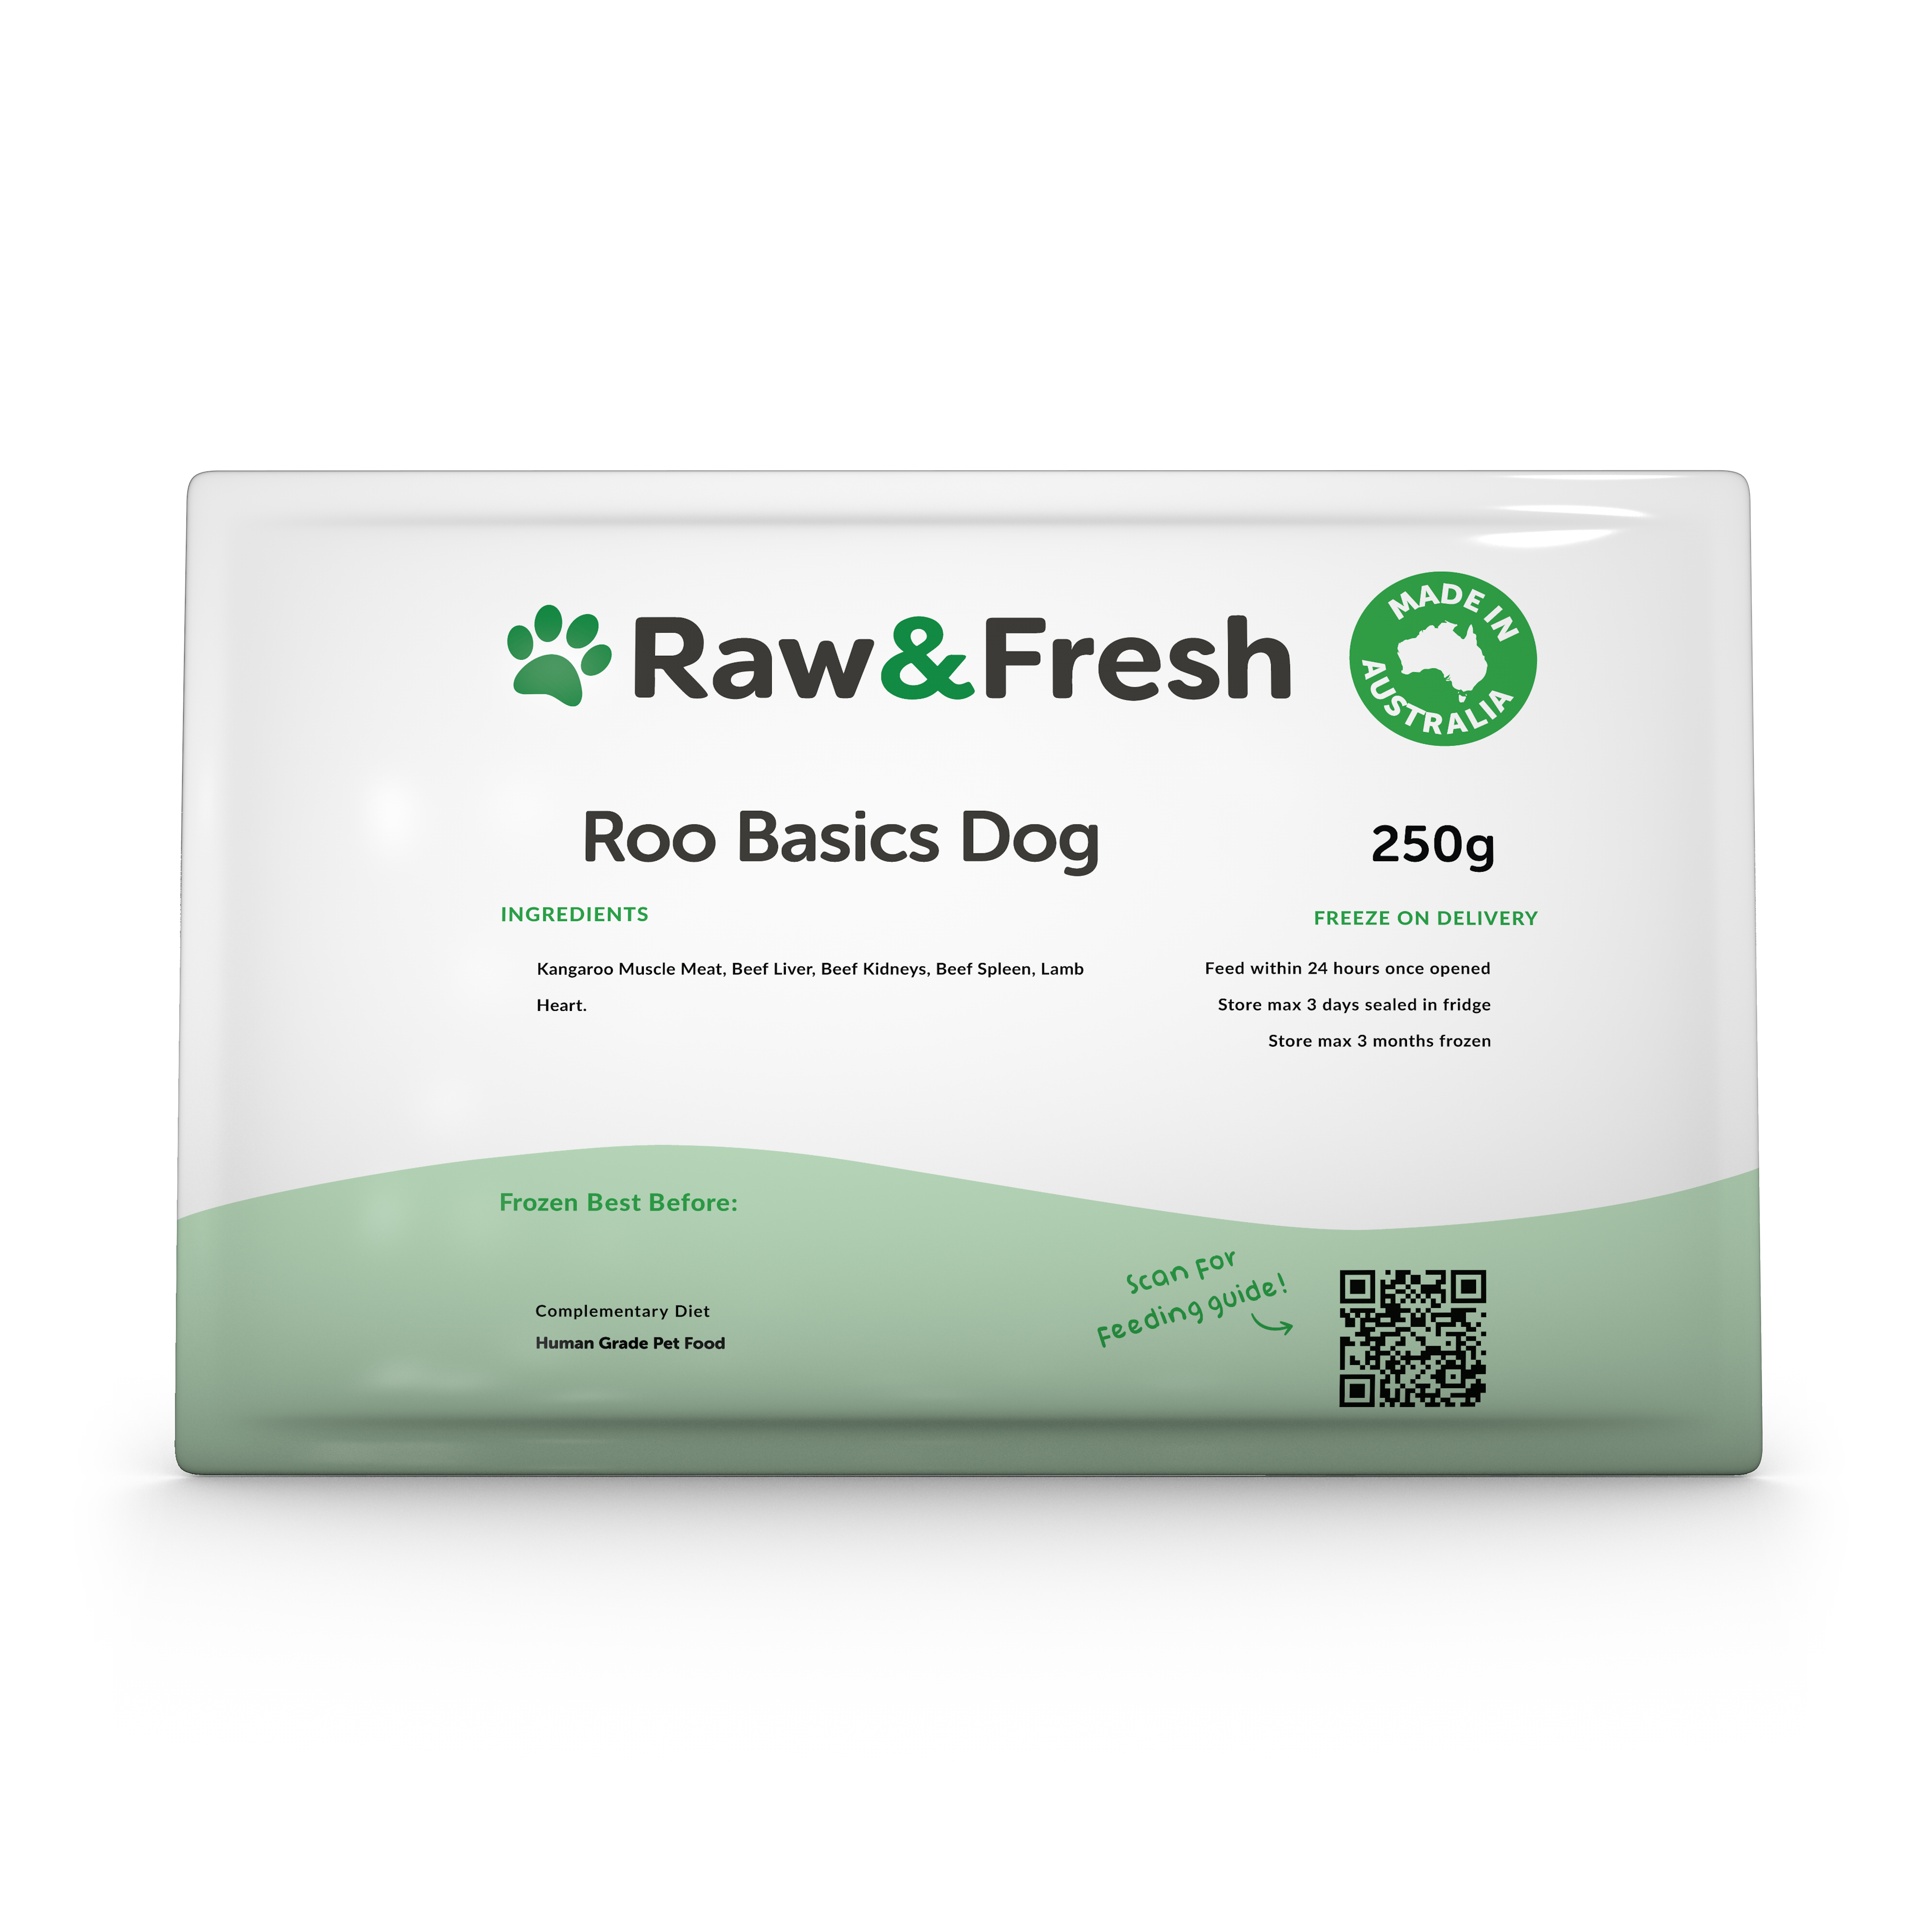 Roo Basics Dog - 250g Pack